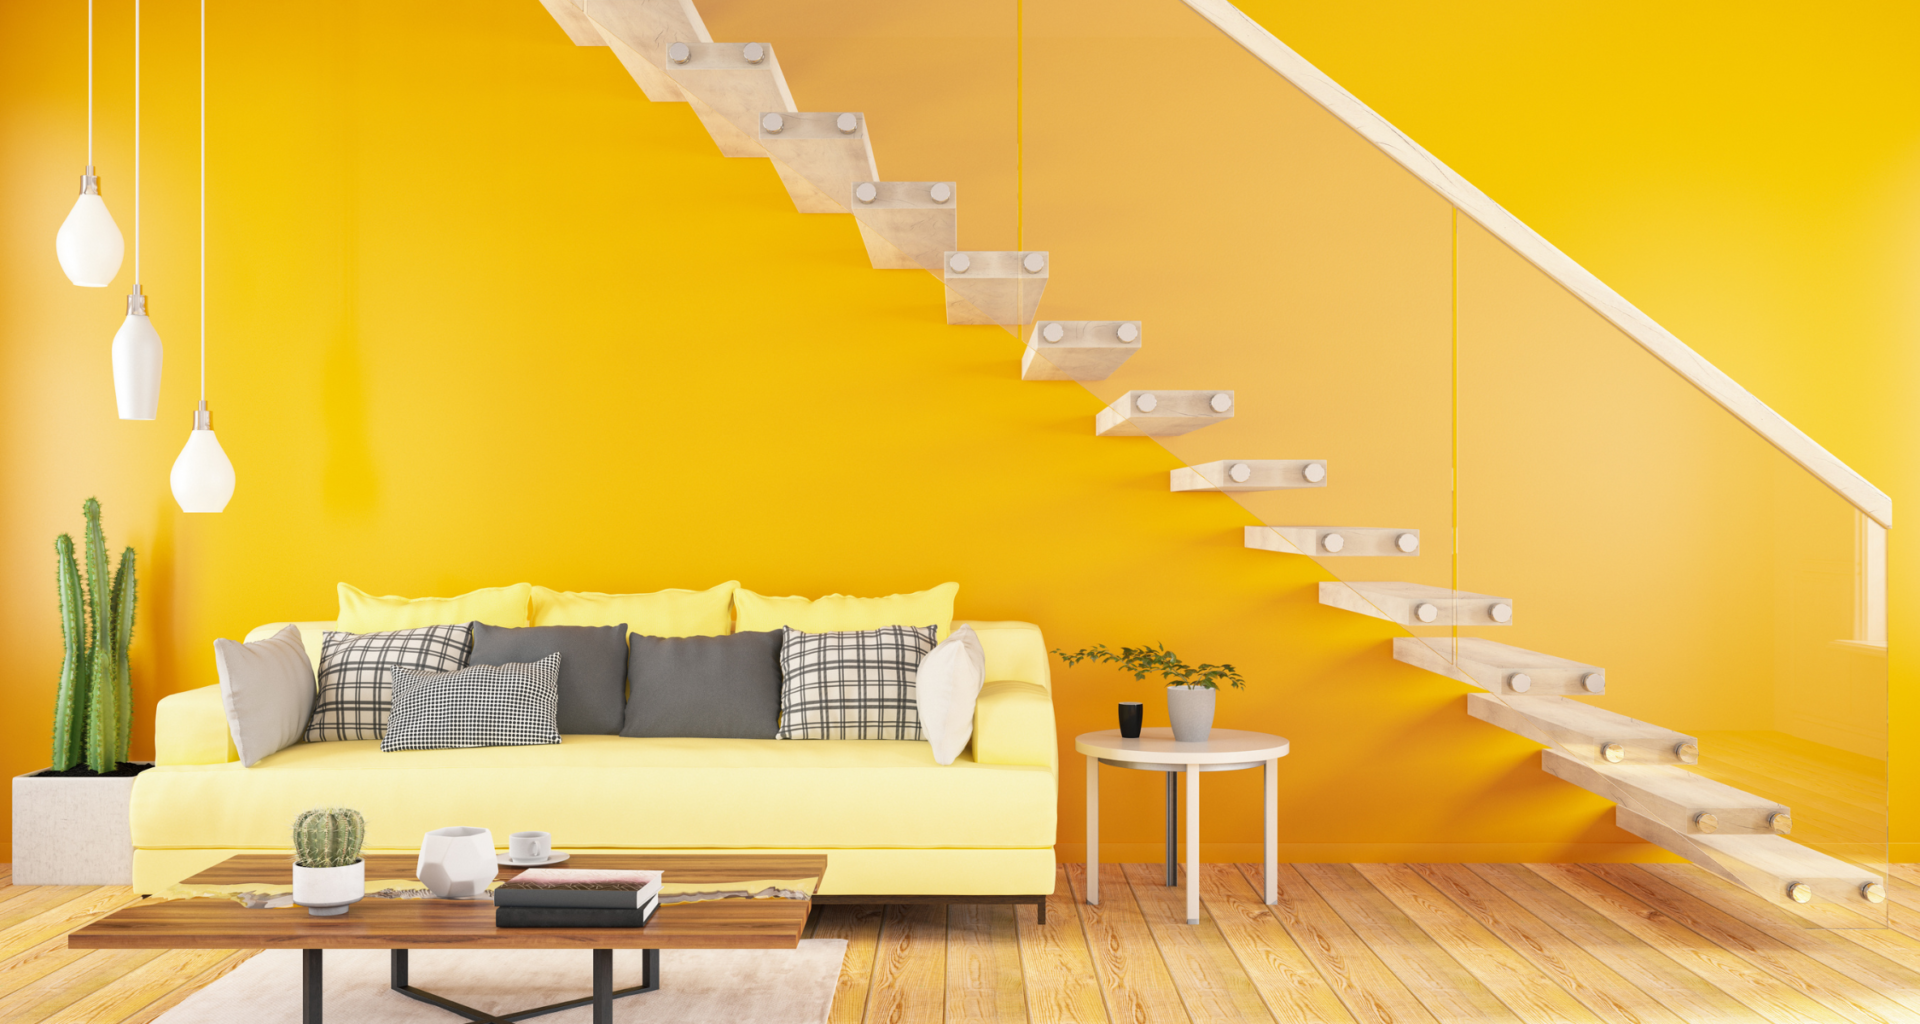 żółta przestrzeń pod schodami